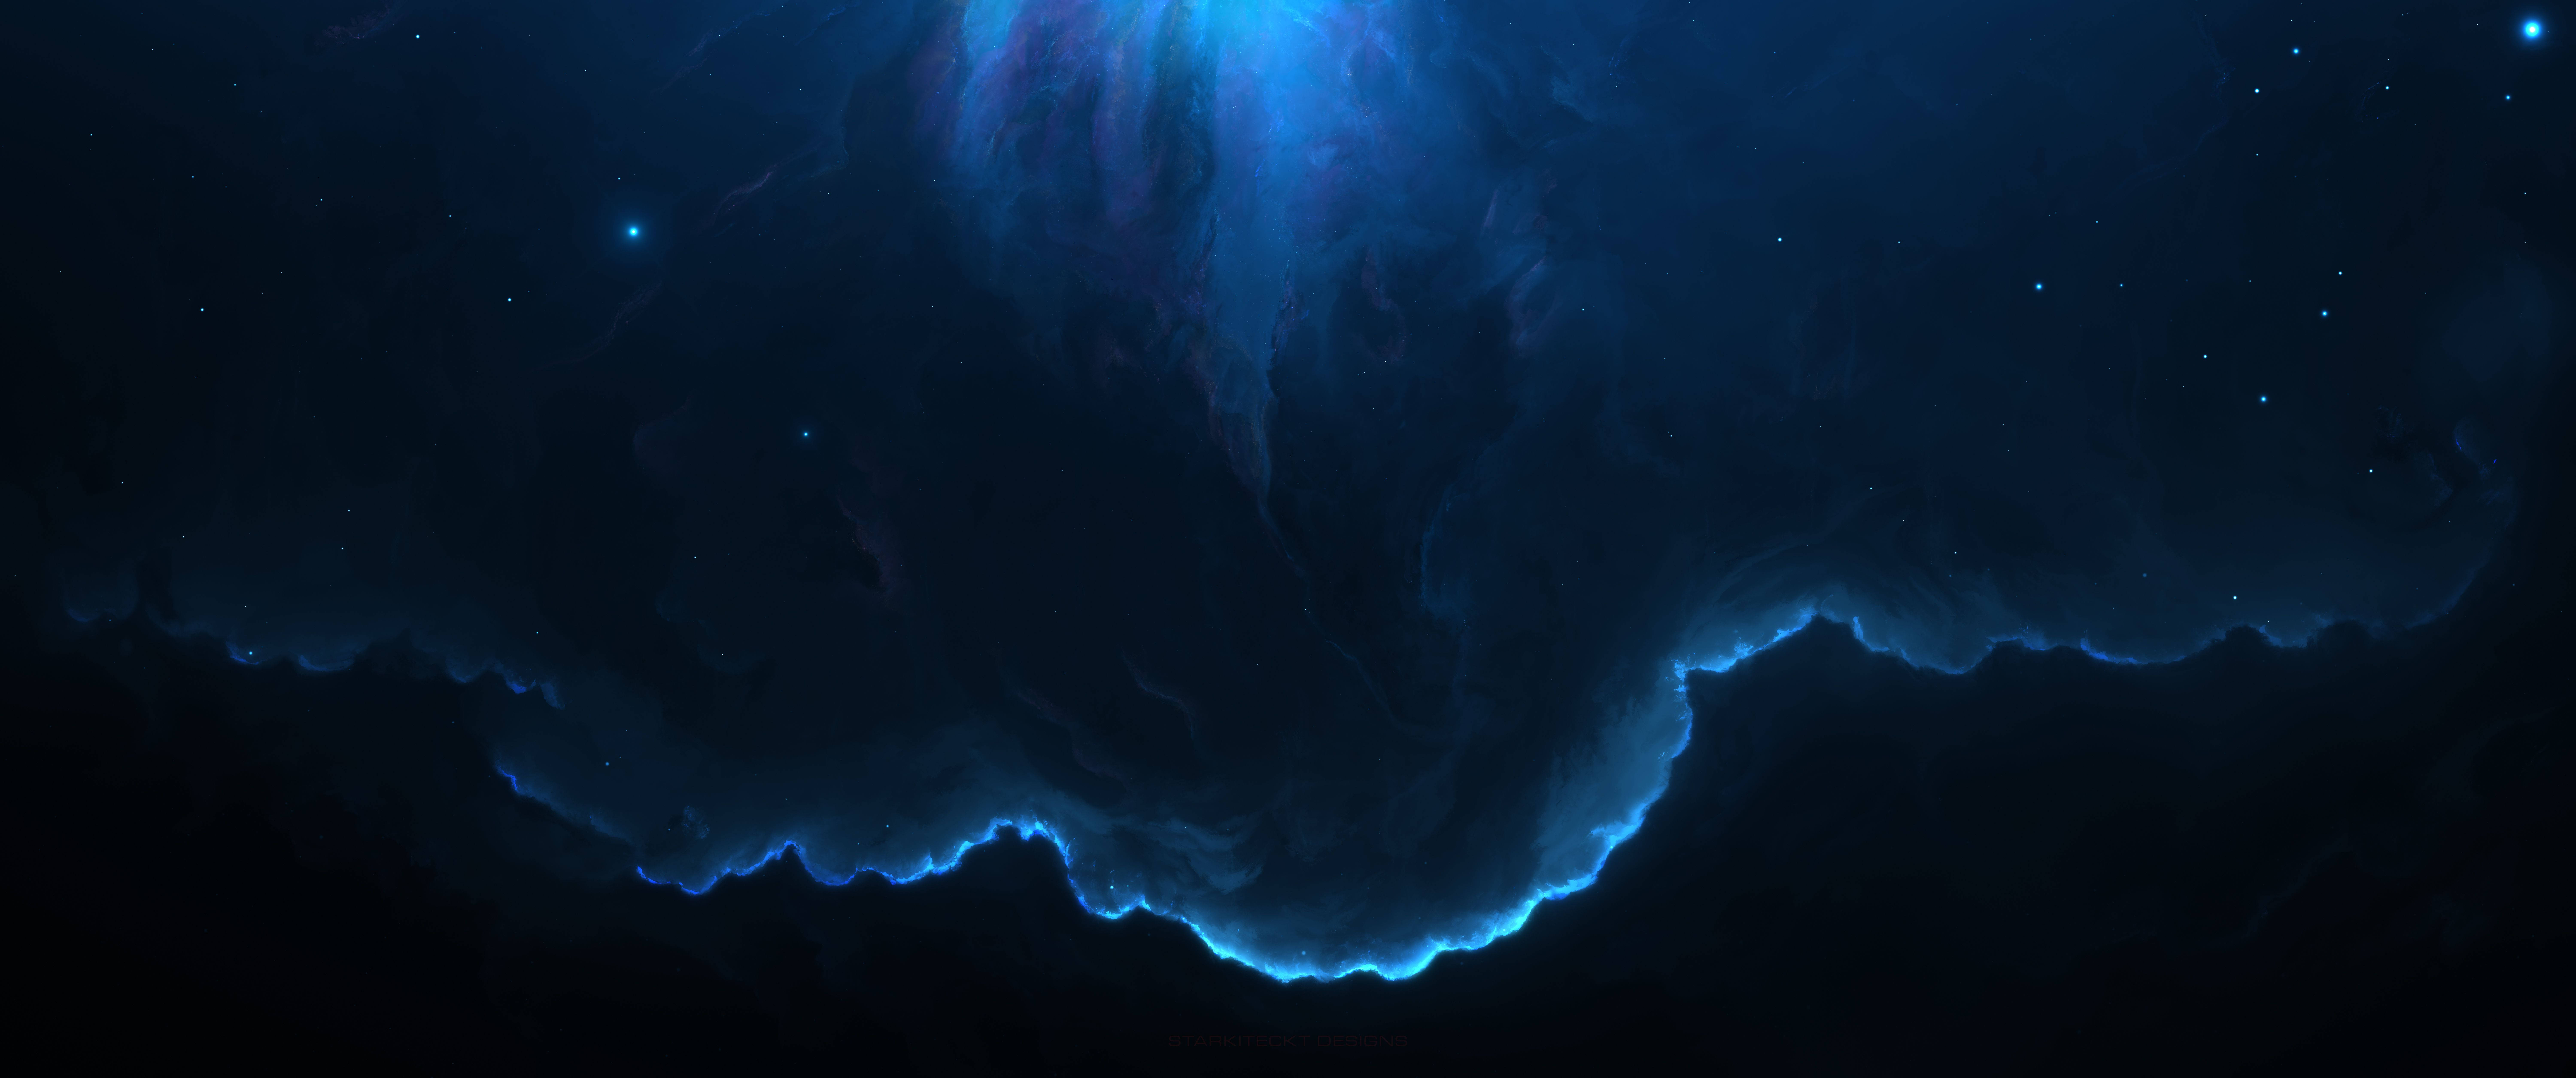 Không gian vô tận, nét đẹp tuyệt vời của vũ trụ sẽ là ảnh nền đẹp cho điện thoại của bạn. Hãy tải về ngay và trải nghiệm những khoảnh khắc đầy phiêu lưu trong một không gian bao la như Nebula. Độ phân giải cao đến 8K sẽ khiến bạn cảm thấy như đang sống trong vũ trụ từng chút một.